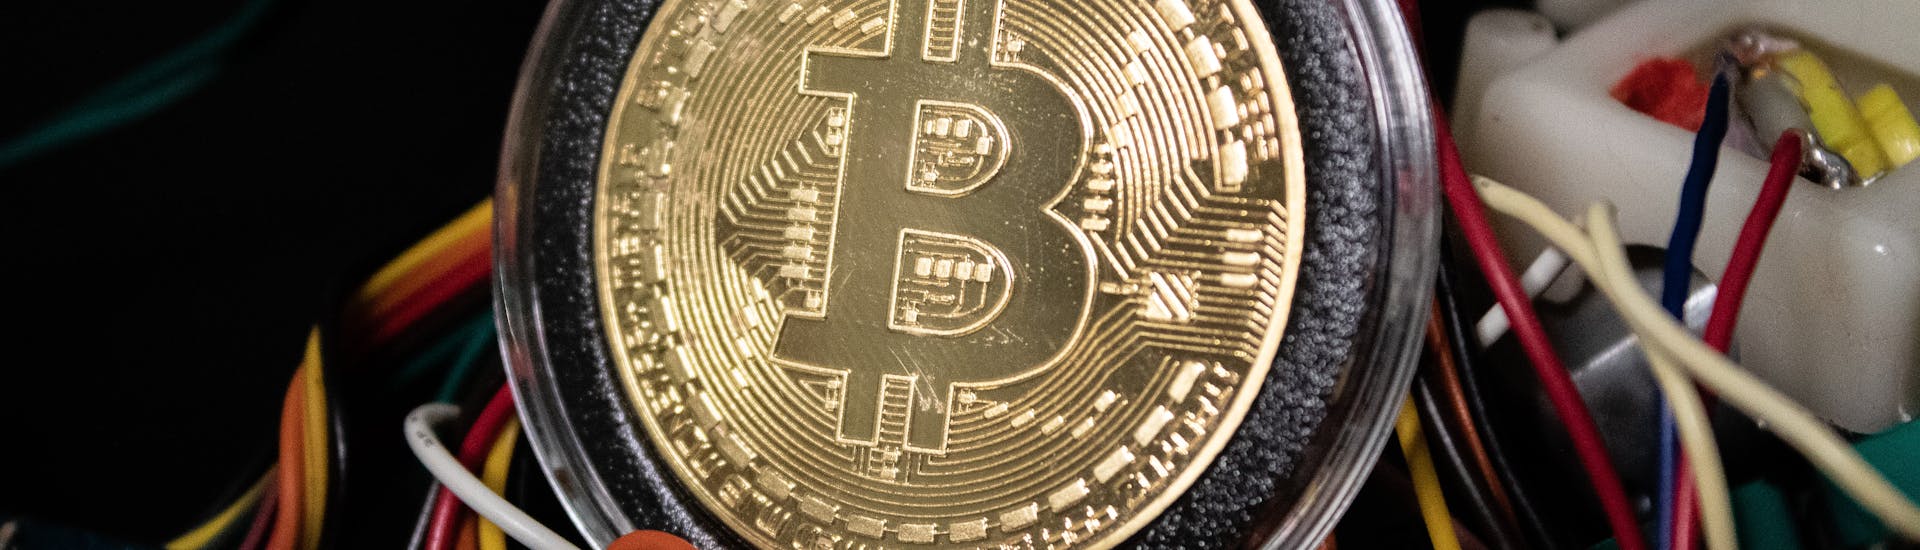 modalități de a câștiga bani, cum ar fi mineritul bitcoin